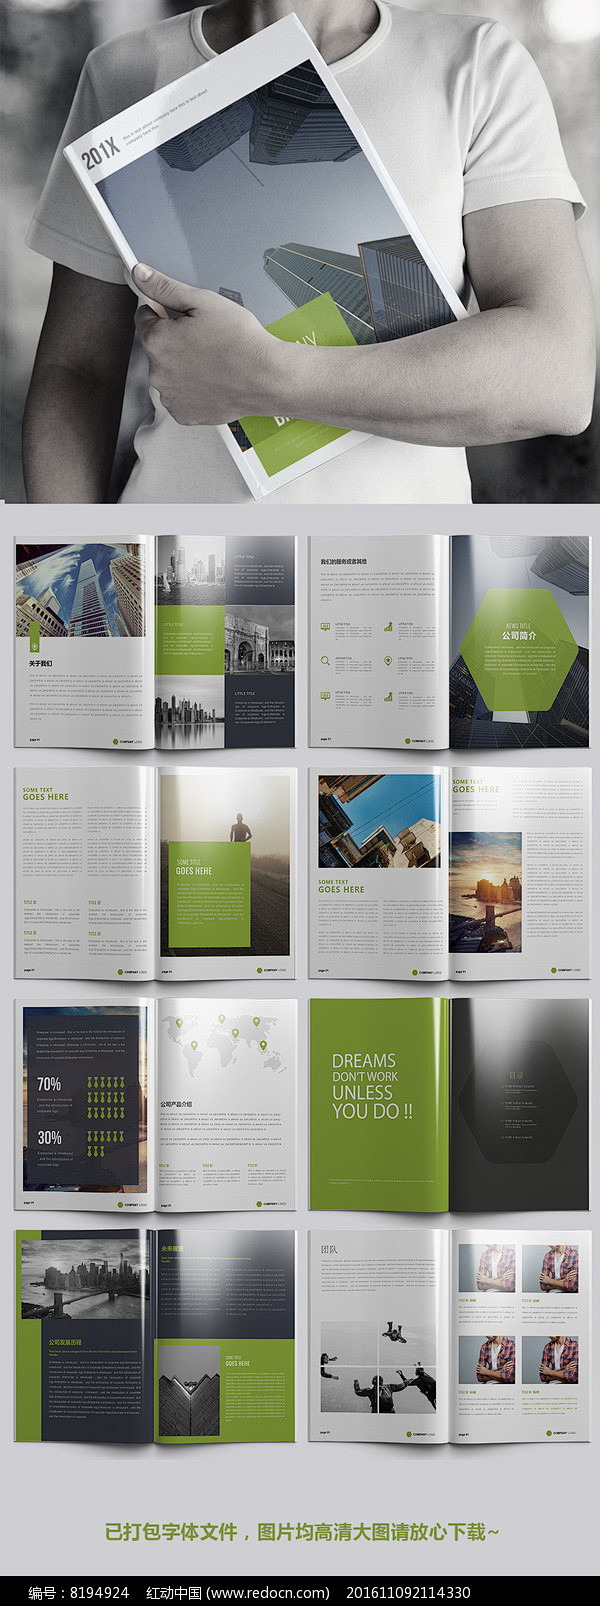 绿色环保企业宣传画册设计模板图片  广告...